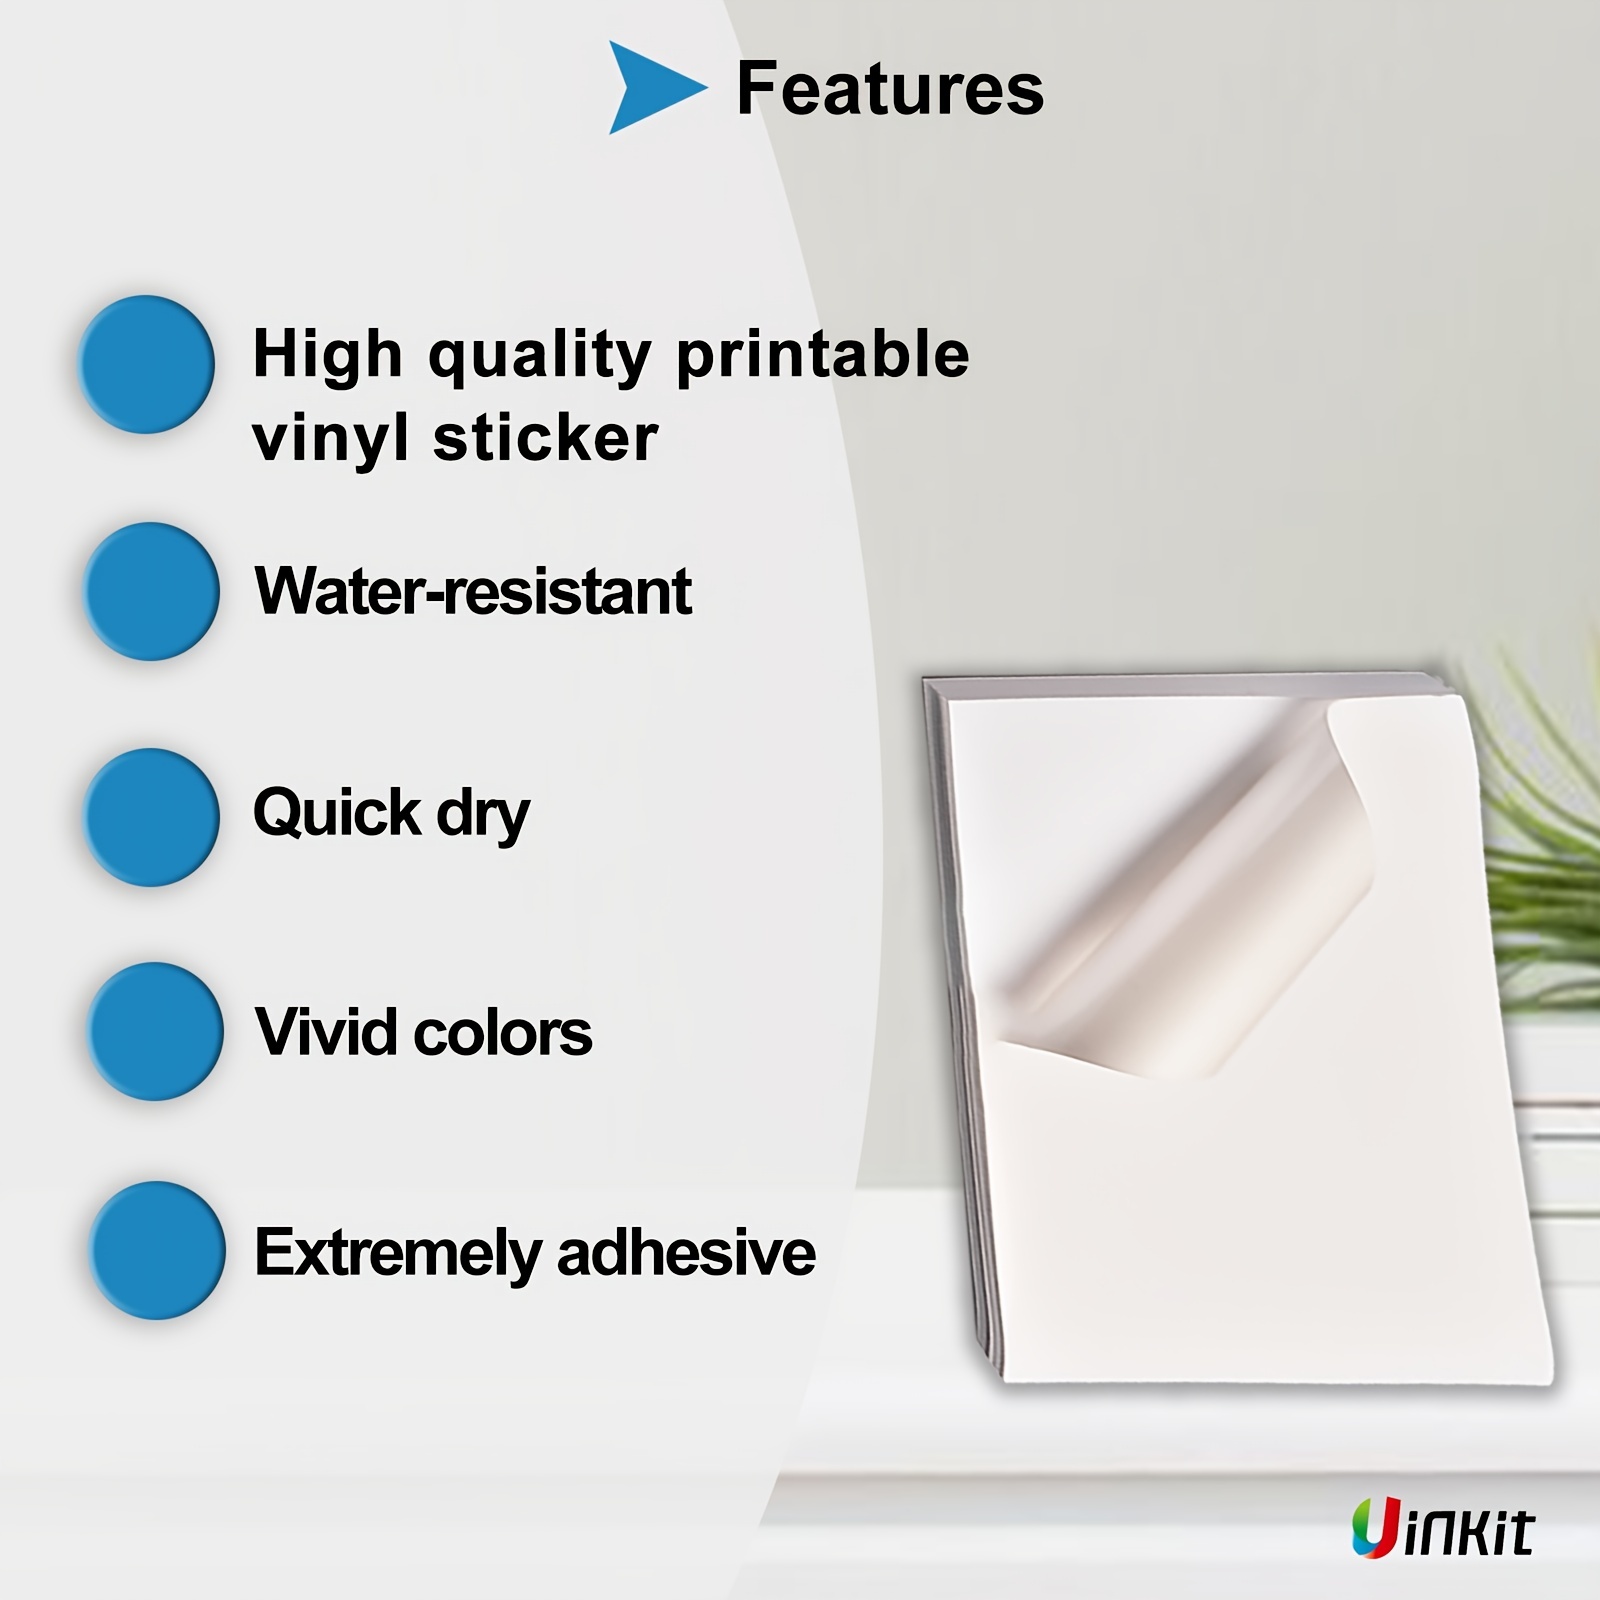 Bulk 100 Printable Vinyl Sticker Paper Glossy White Waterproof Inkjet  Printer